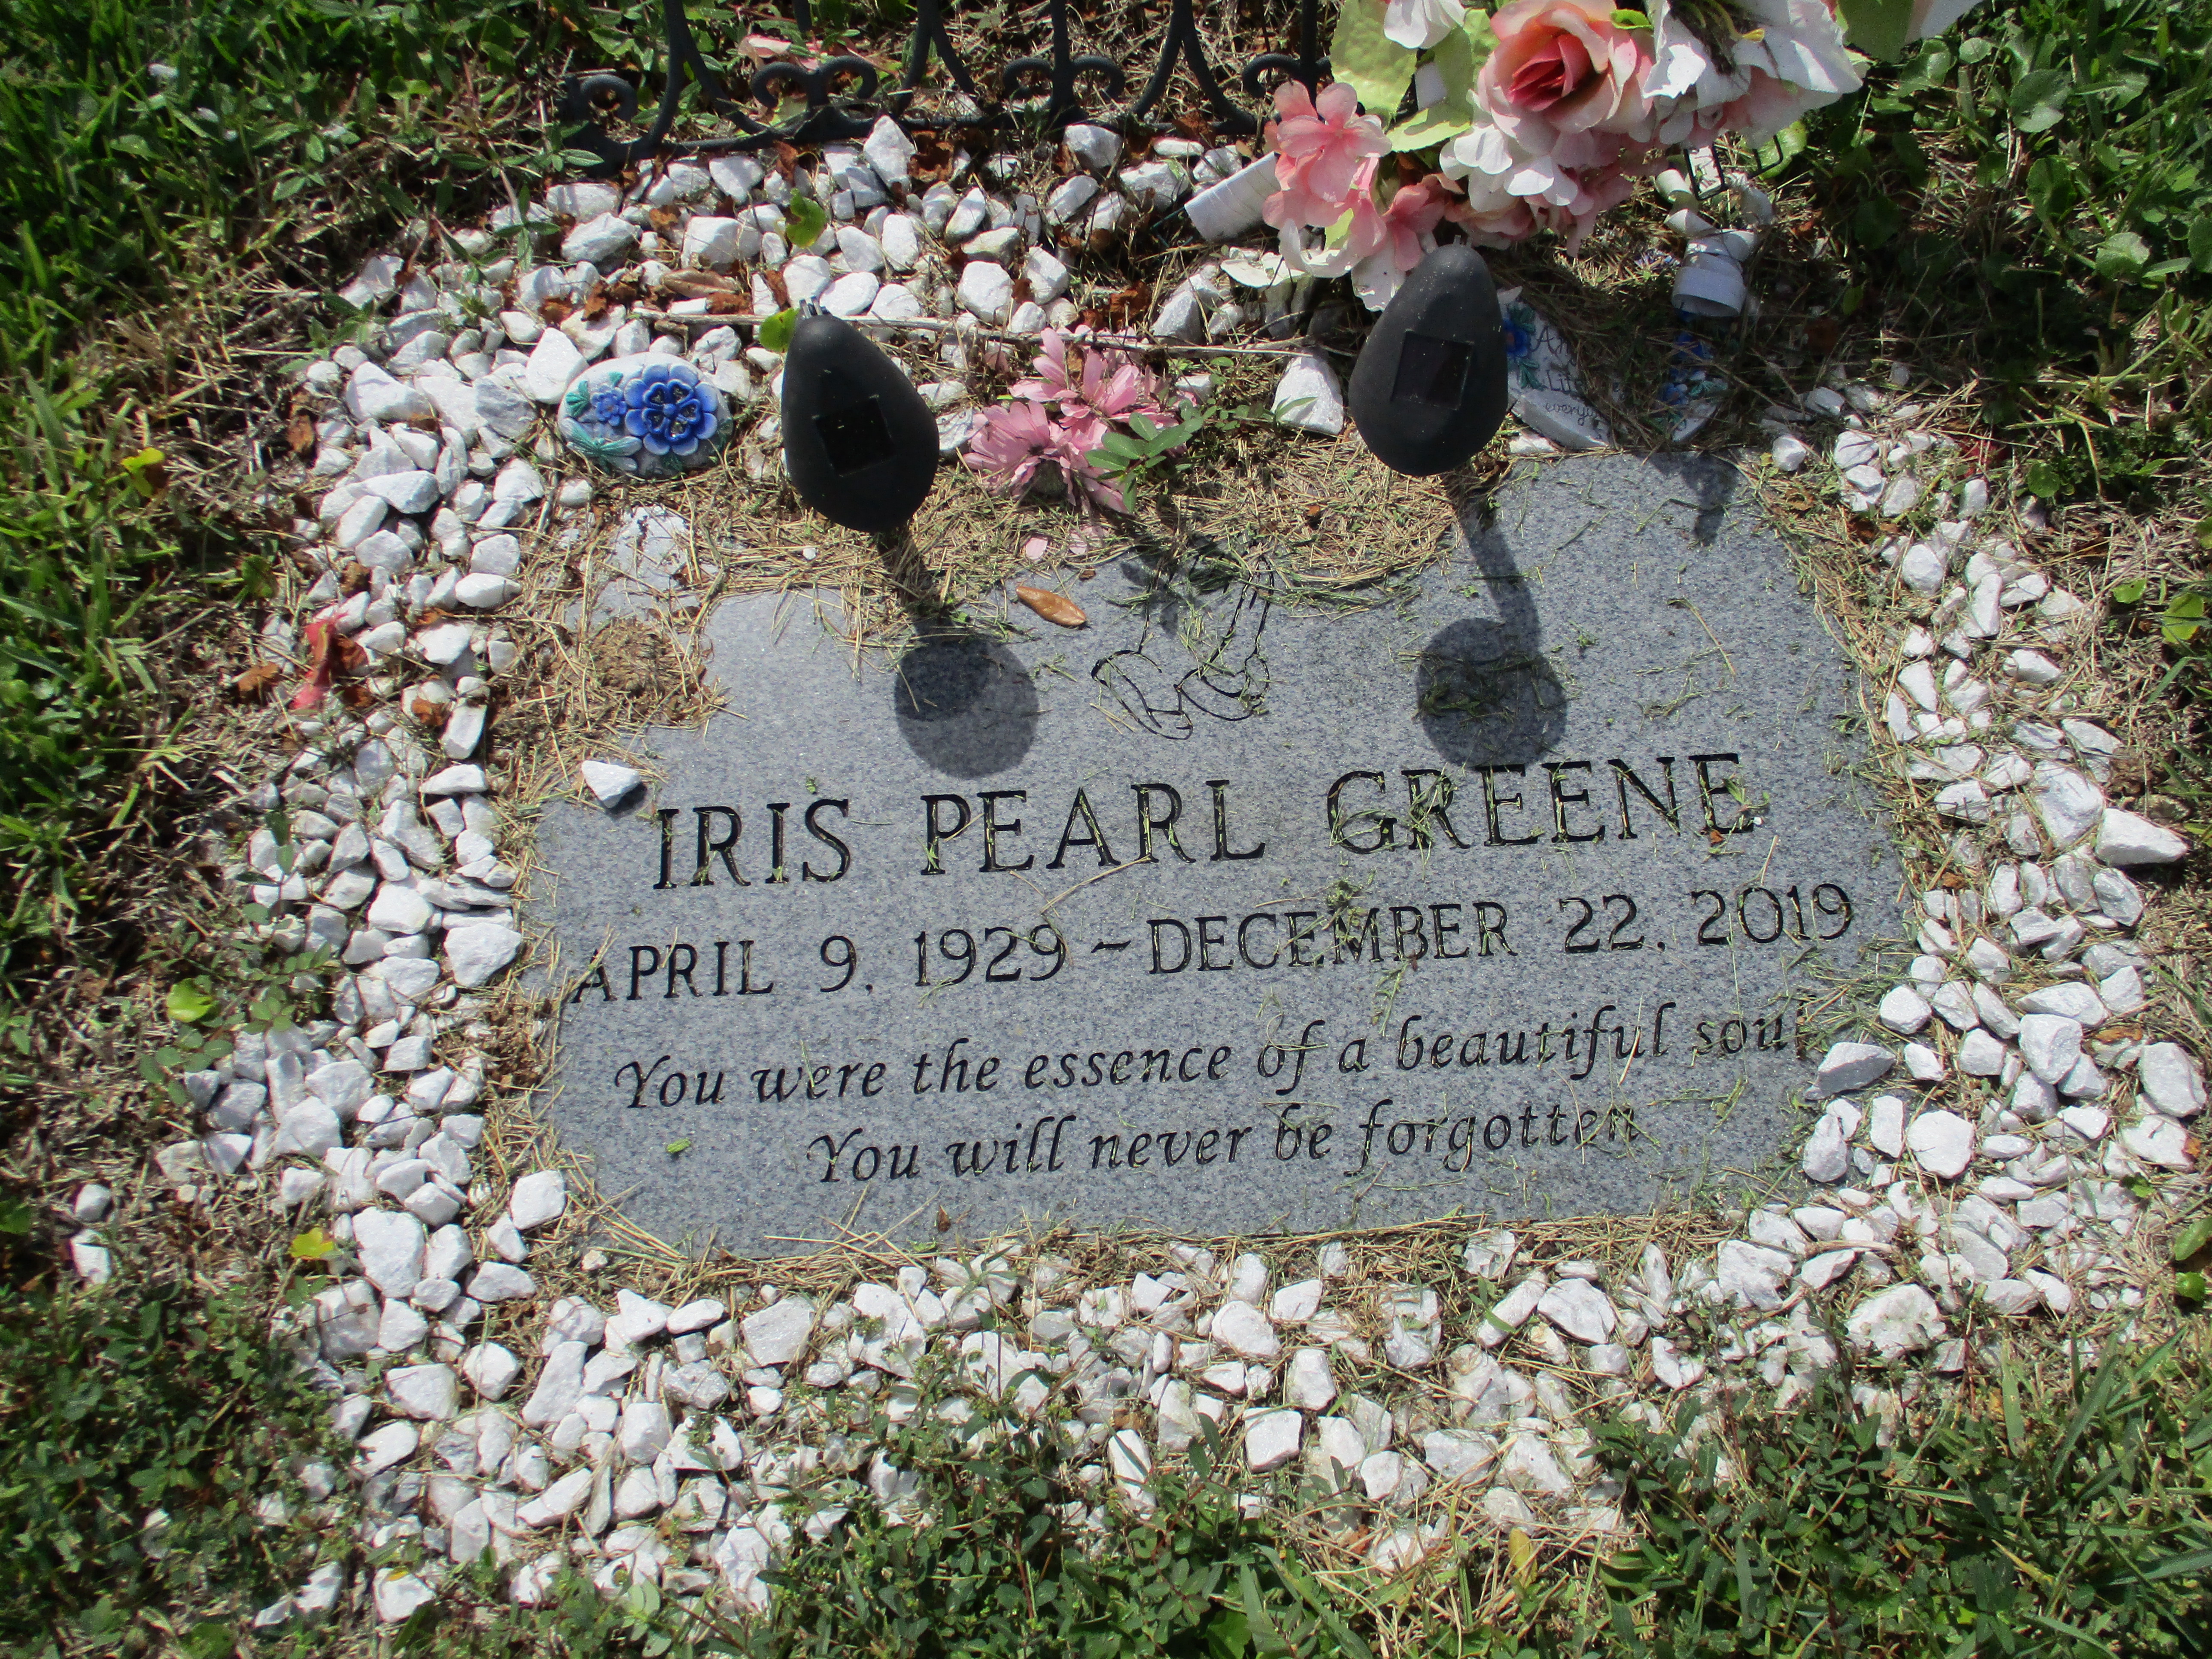 Iris Pearl Greene